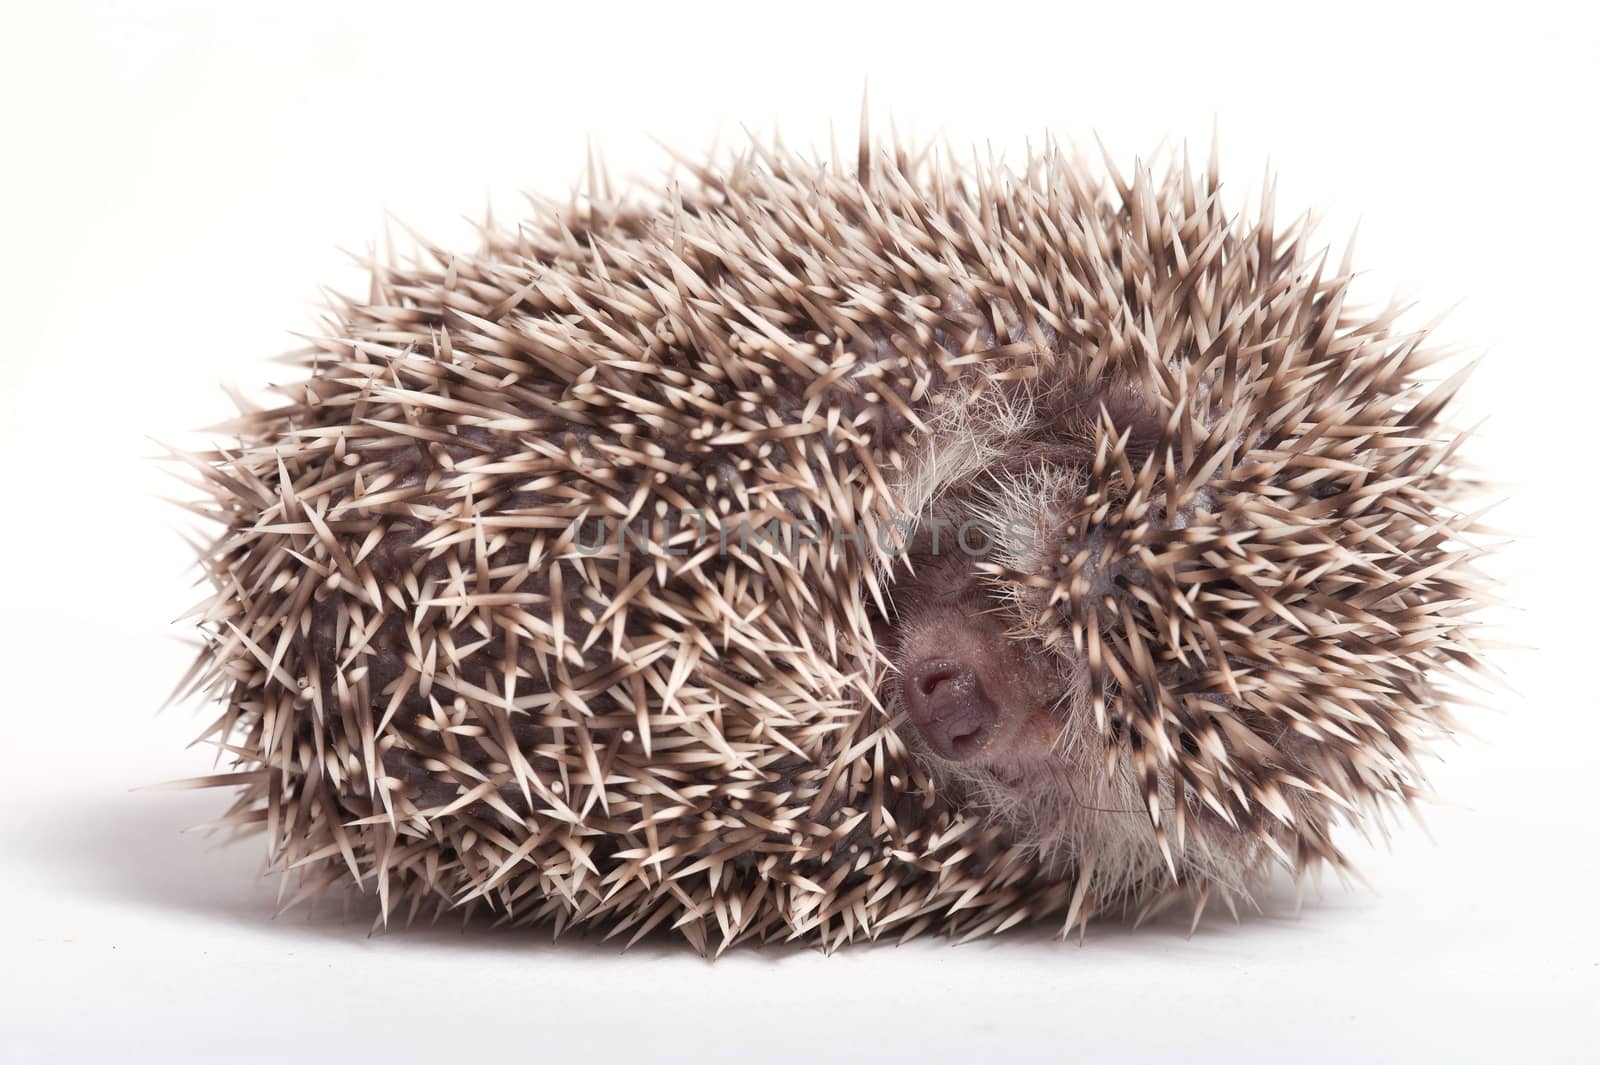 Hedgehog sleeping isolate on white background